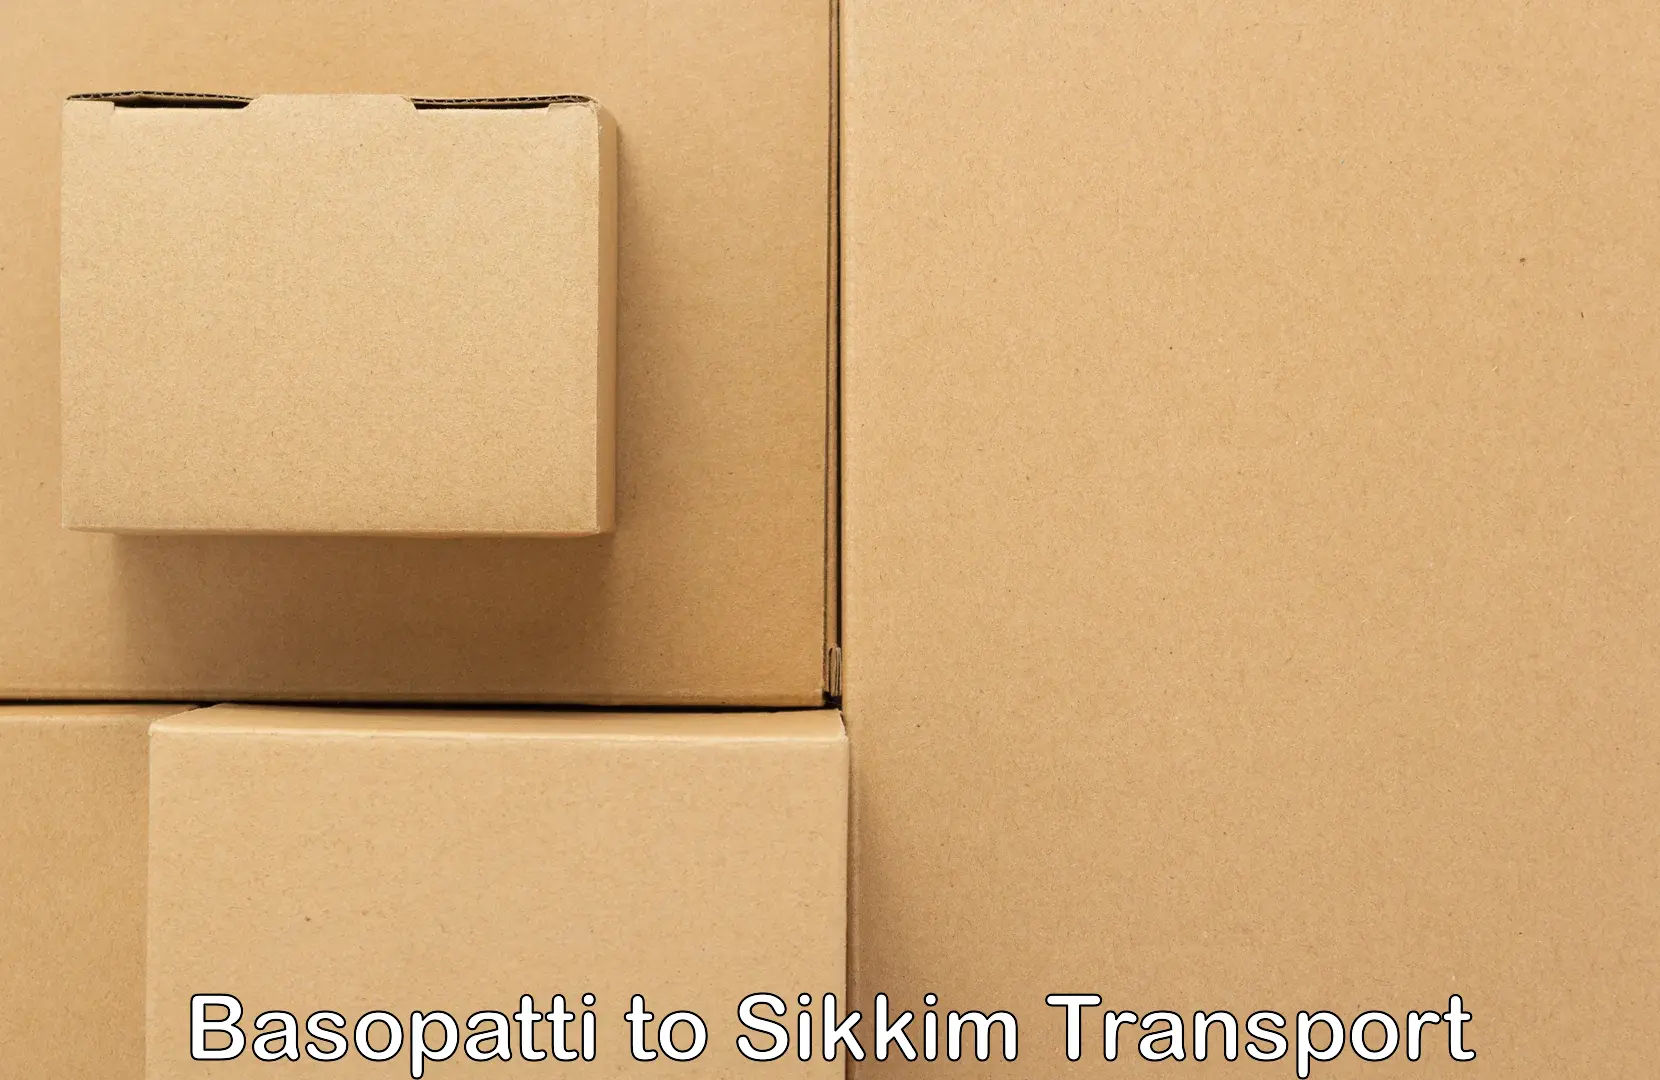 Pick up transport service Basopatti to Sikkim